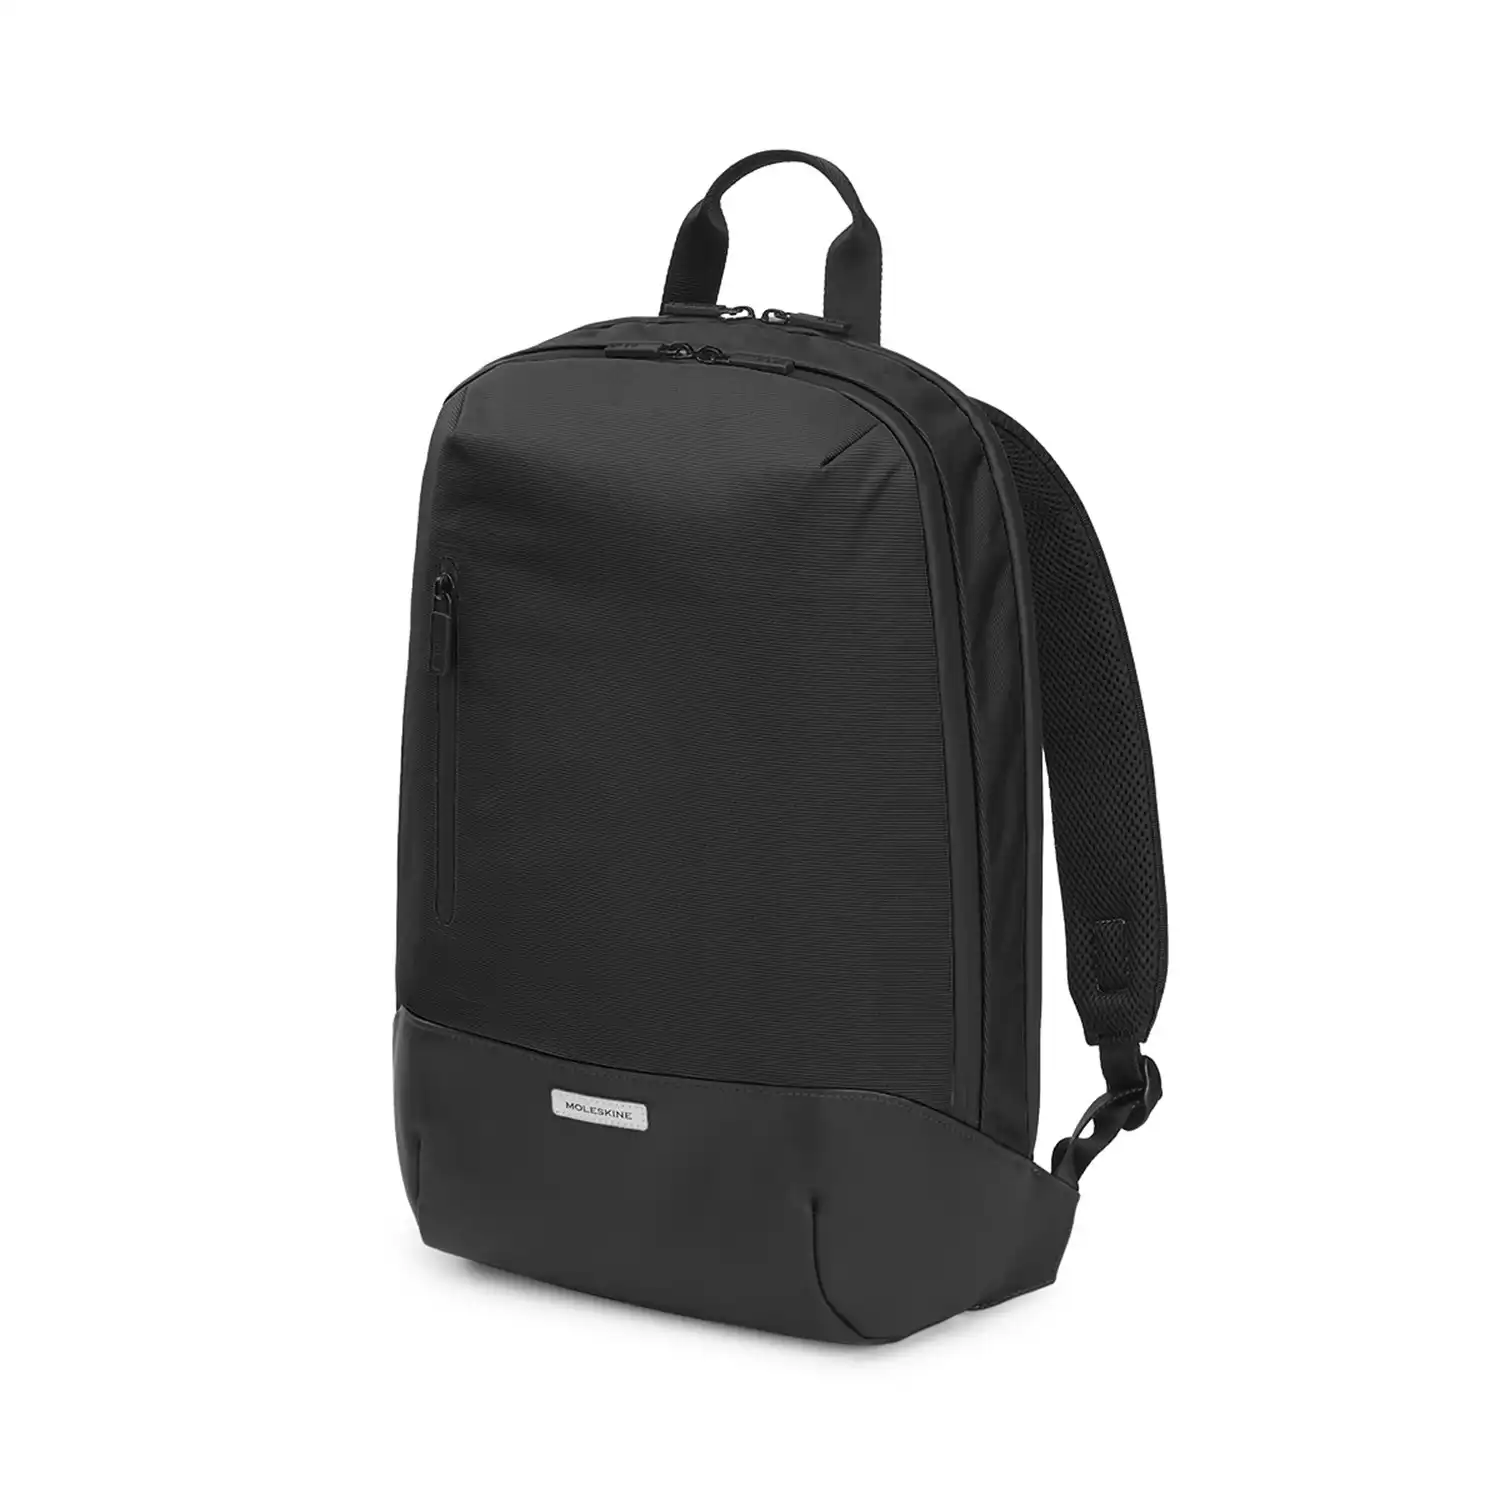 Moleskine Metro Water Resistant 15" Laptop Padded Backpack School/Travel Bag BLK